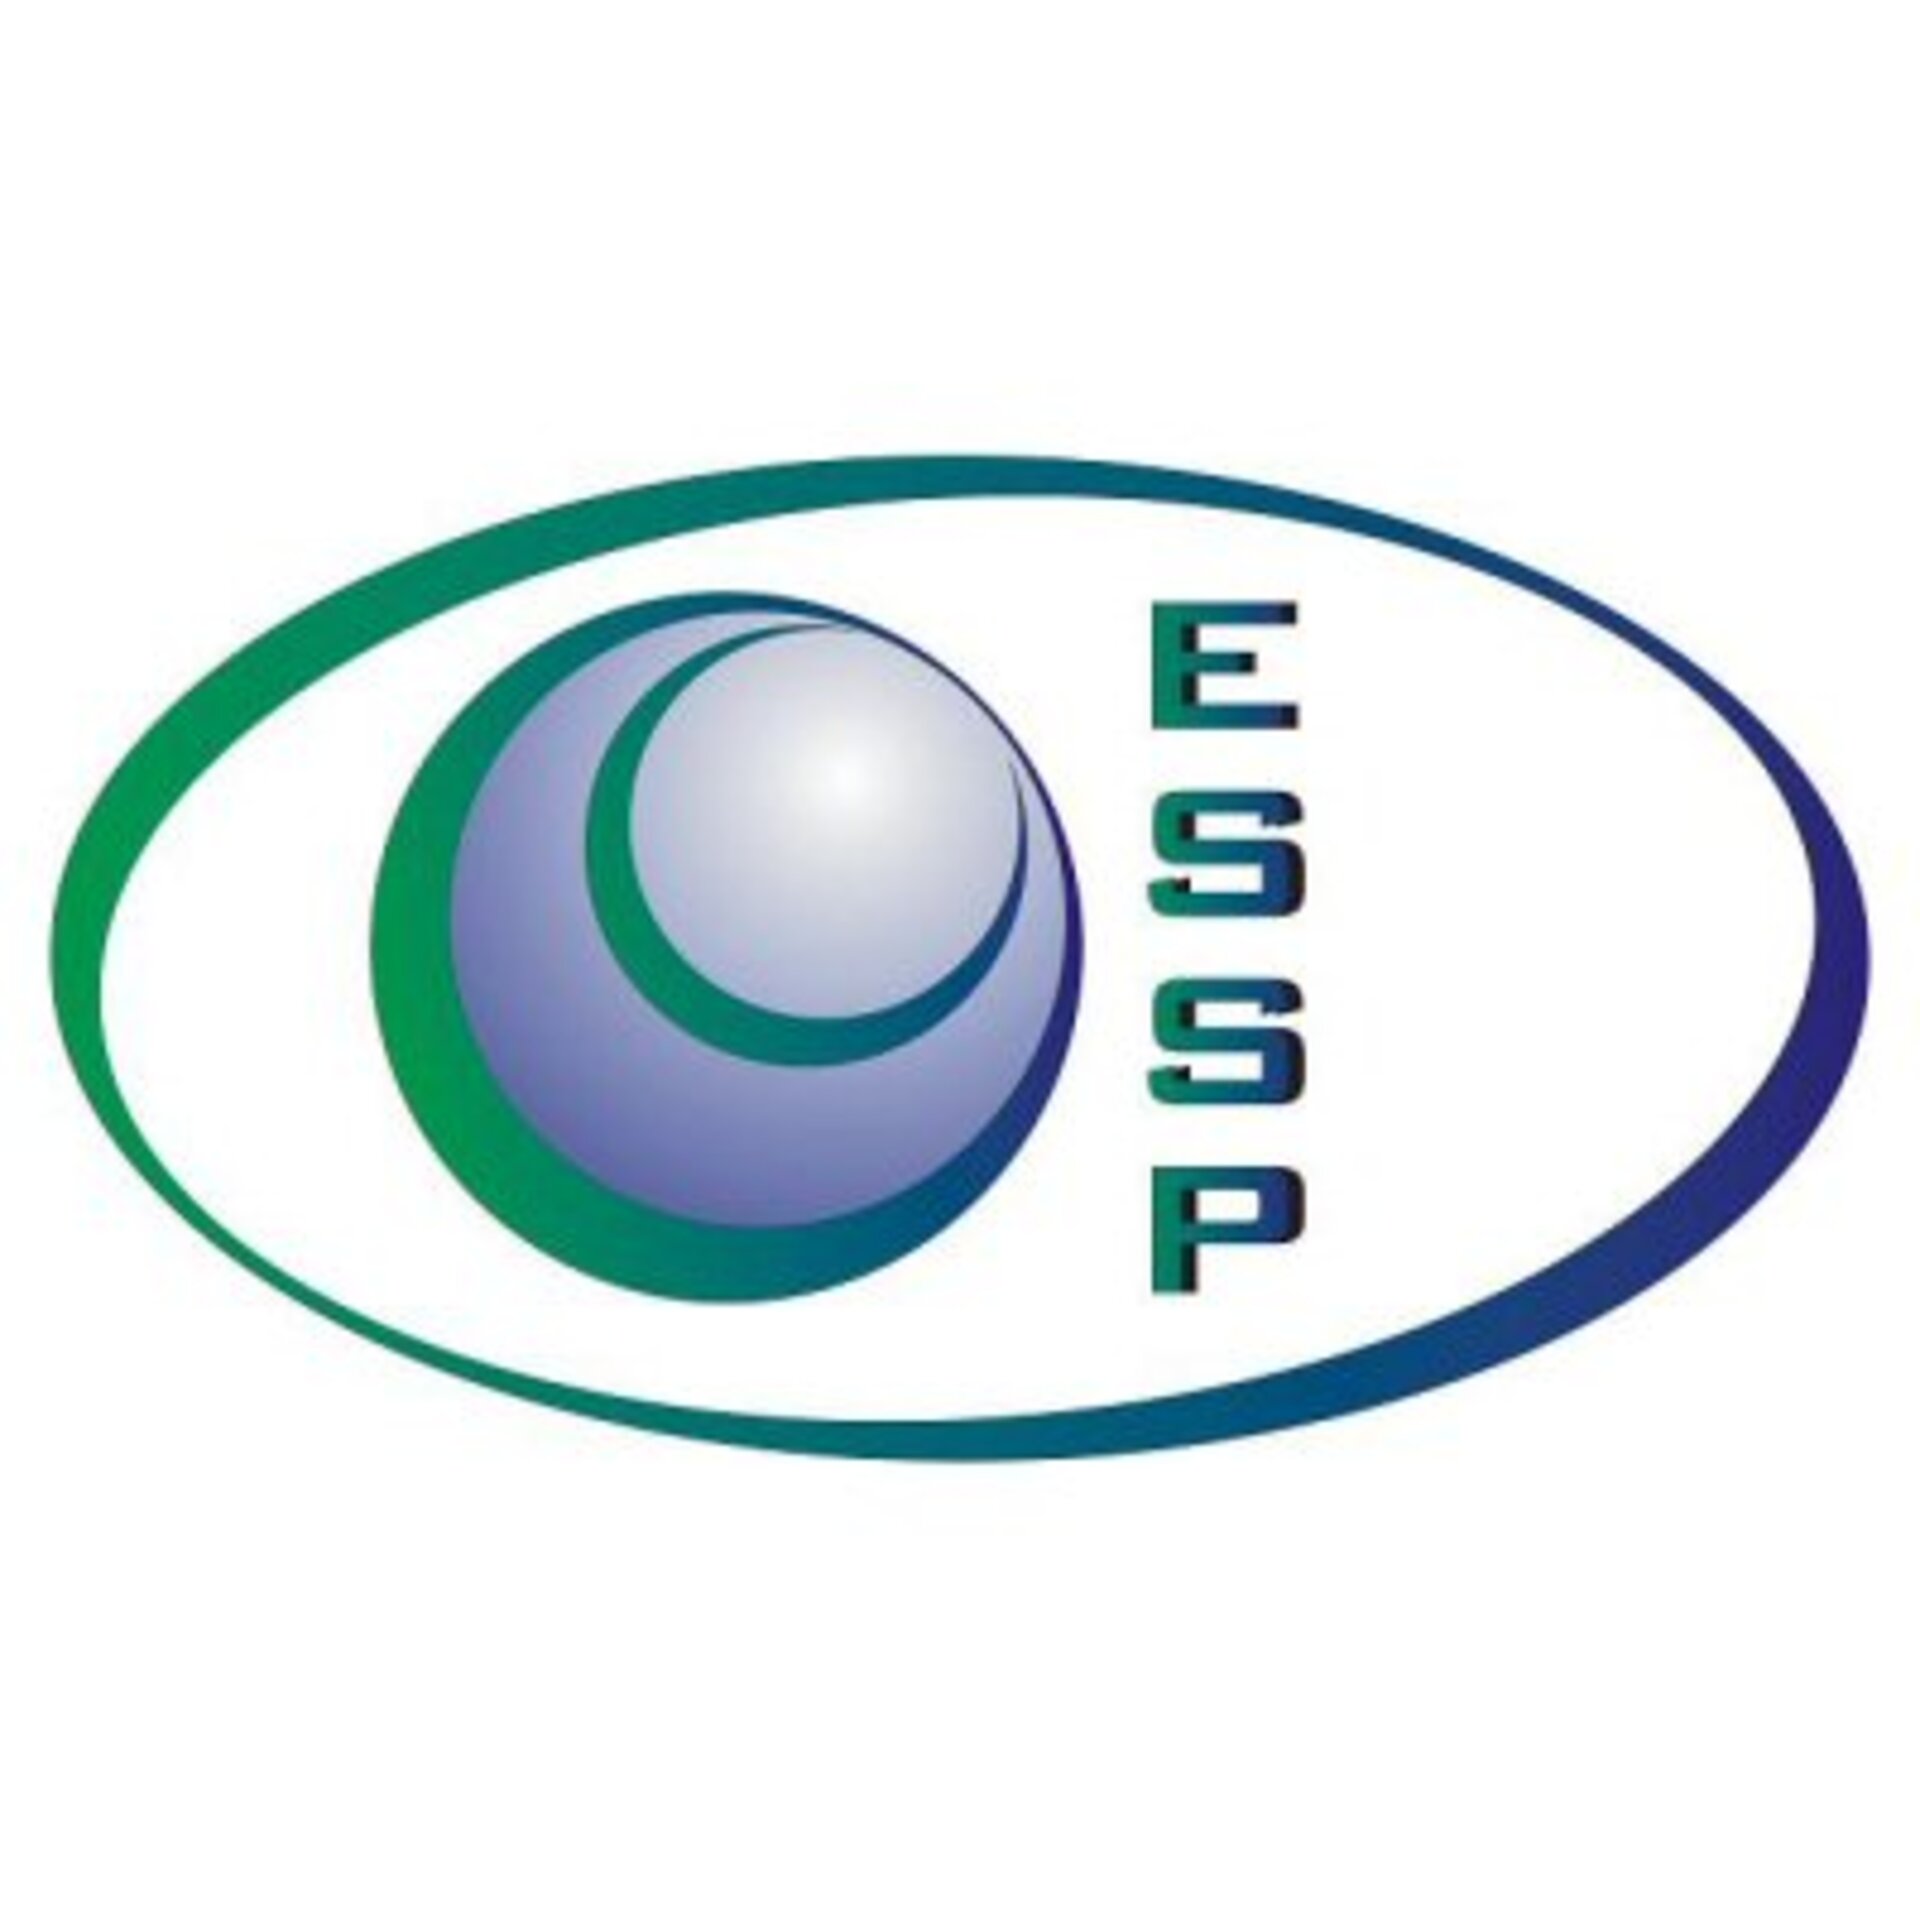 ESSP logo